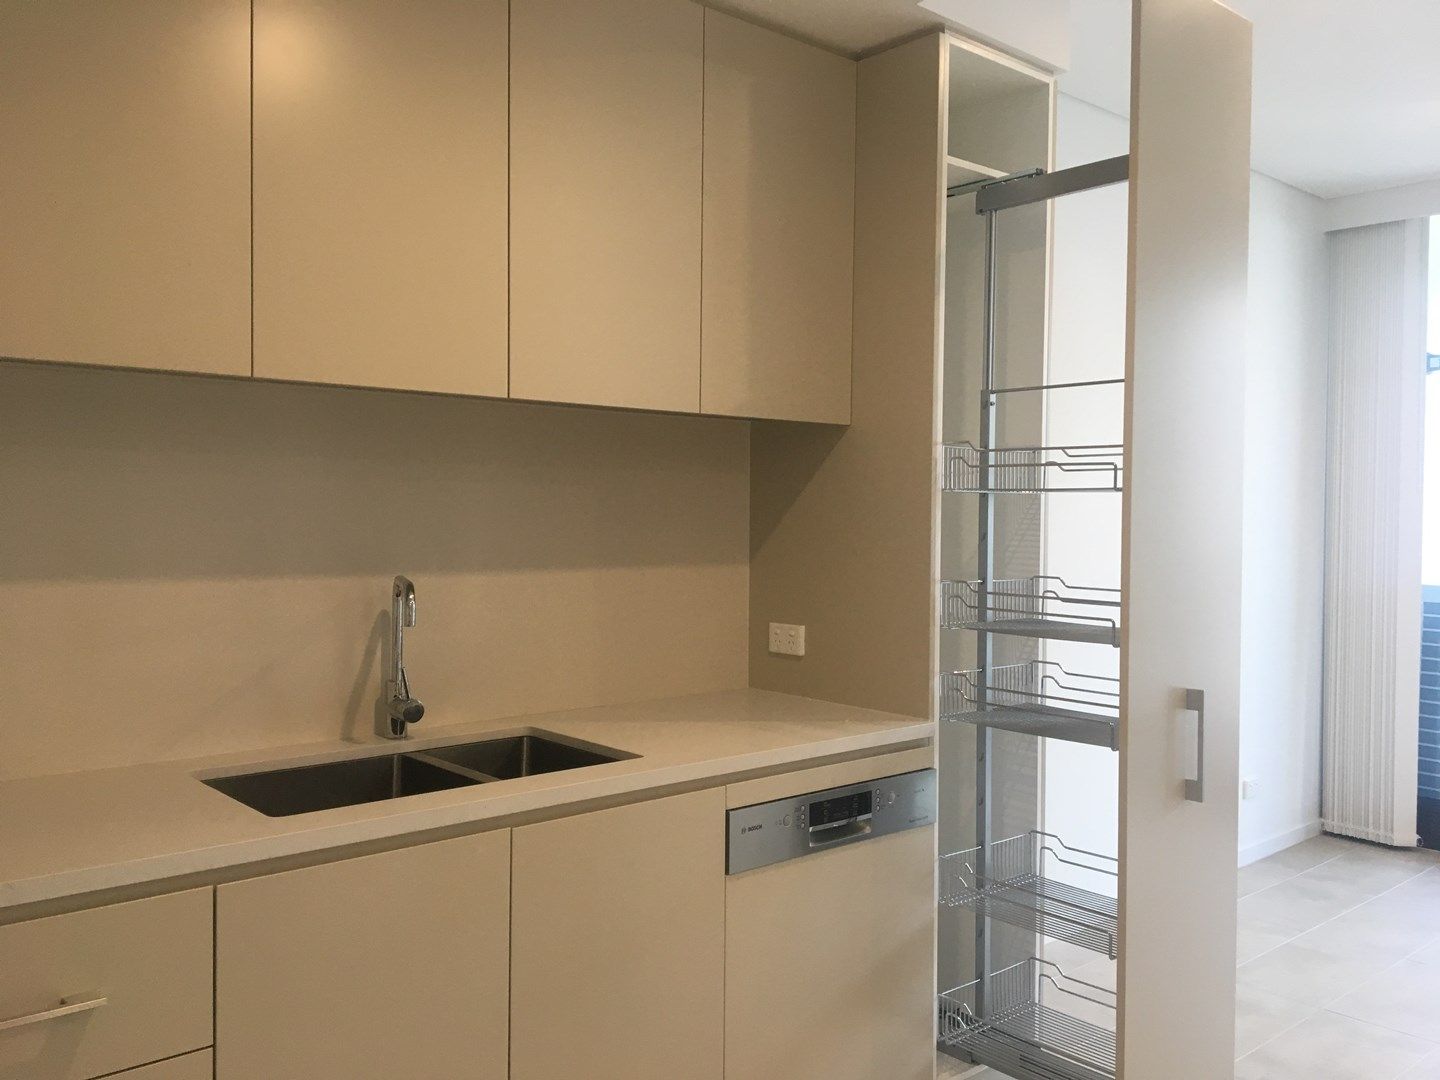 1 bedrooms Apartment / Unit / Flat in 1008/3 Blake Street KOGARAH NSW, 2217